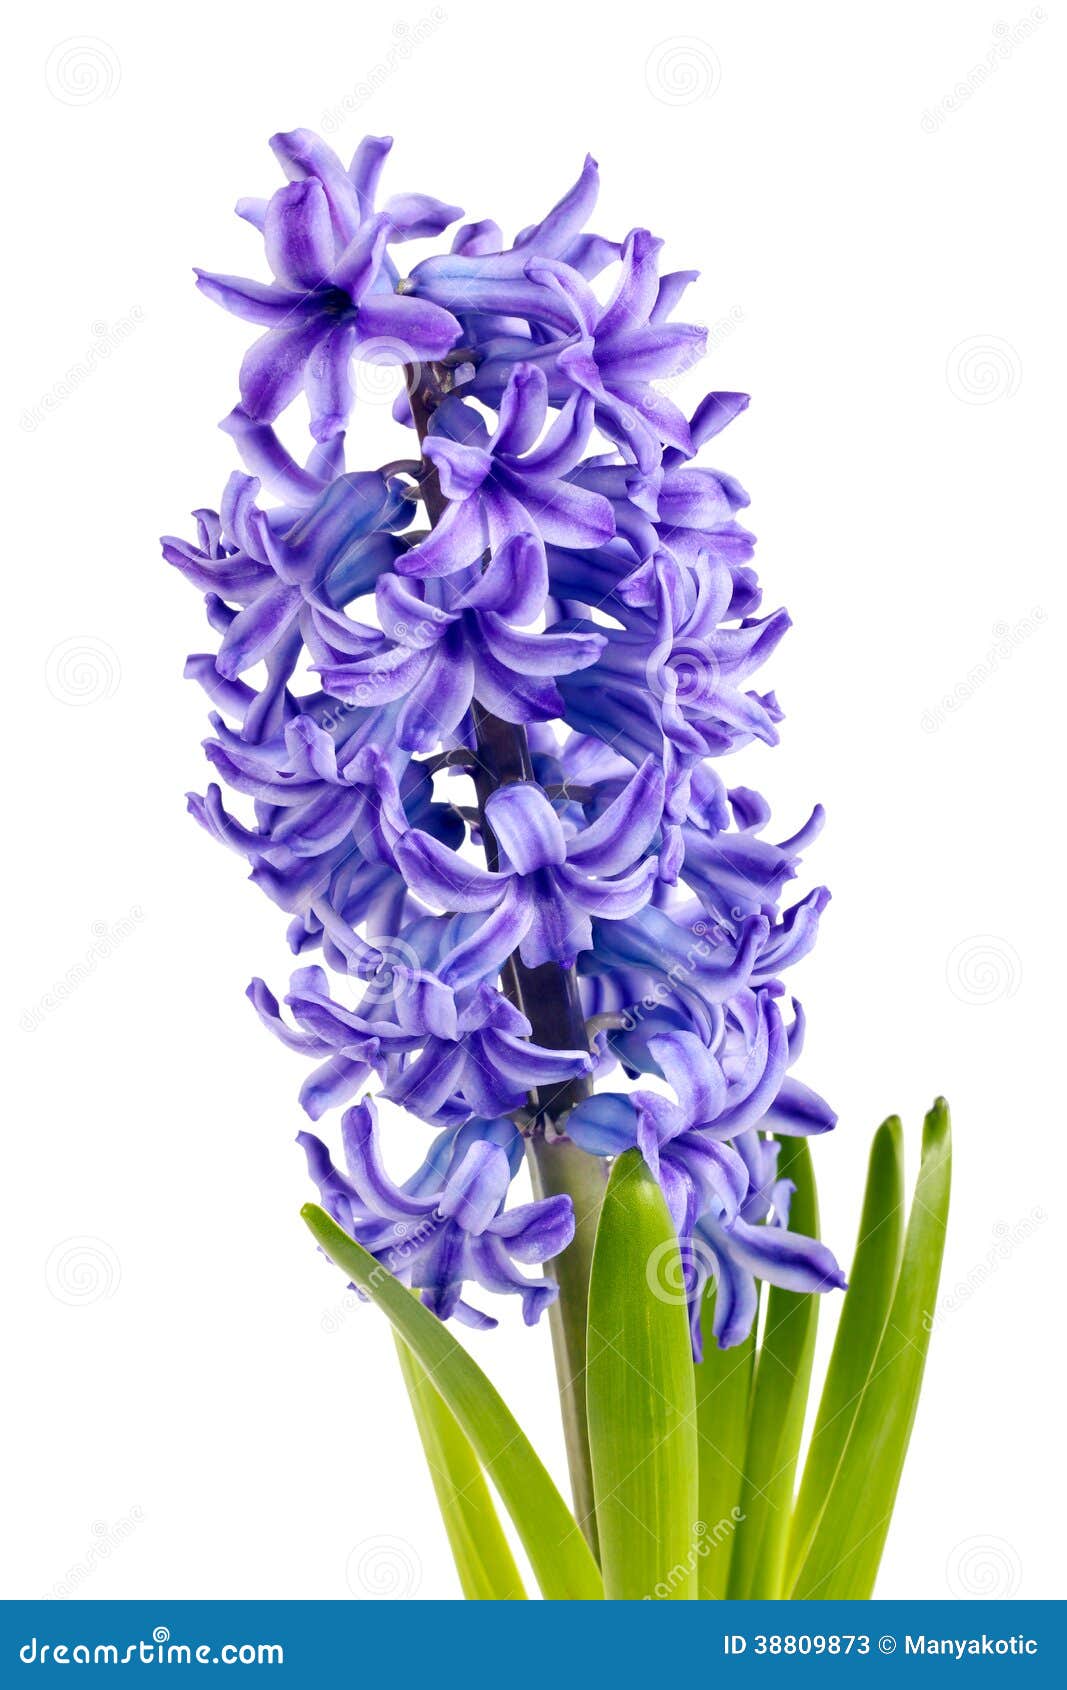 Purple Hyacinth - loại hoa tím thanh lịch với độ rực rỡ và mềm mại của những cánh hoa mùa xuân. Để khám phá vẻ đẹp của Purple Hyacinth, bạn hãy xem những hình ảnh tuyệt đẹp của loại hoa này.